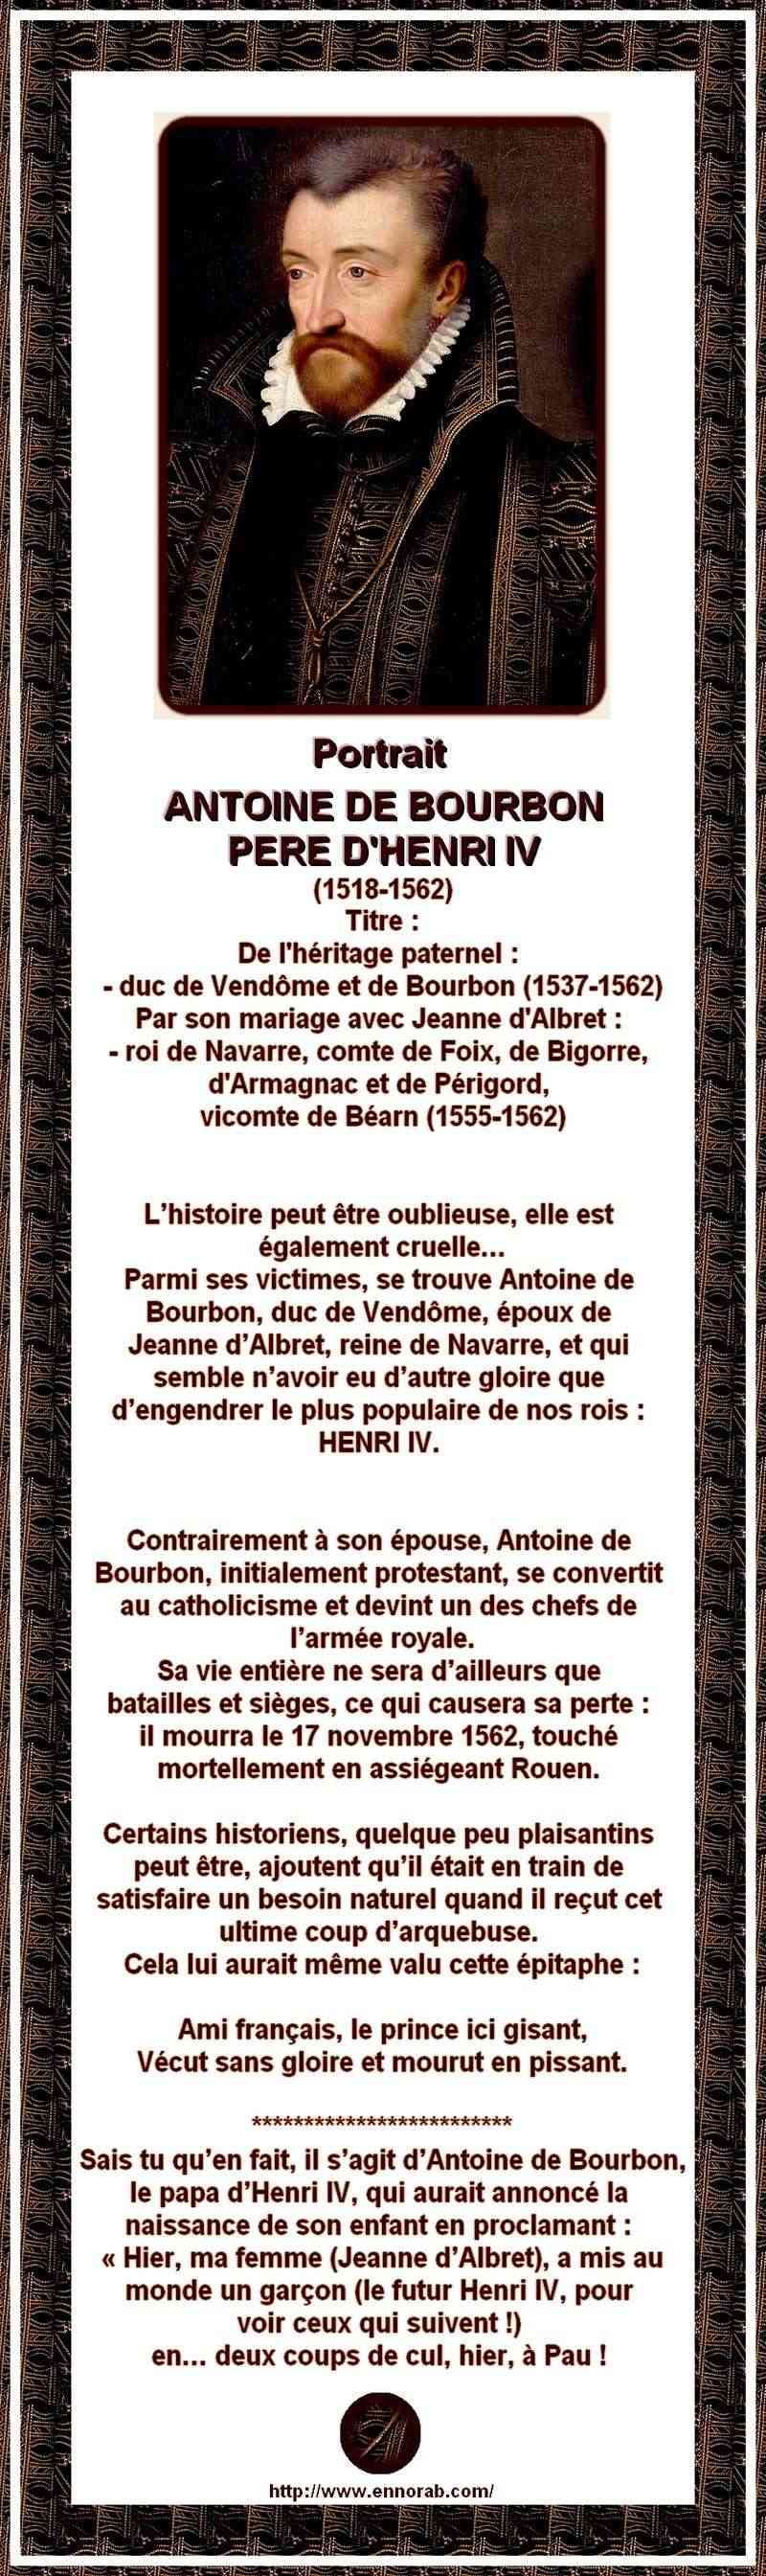 FRANCE - ANTOINE DE BOURBON PERE D'HENRI IV VECUT SANS GLOIRE ET MOURUT EN PISSANT 044x67